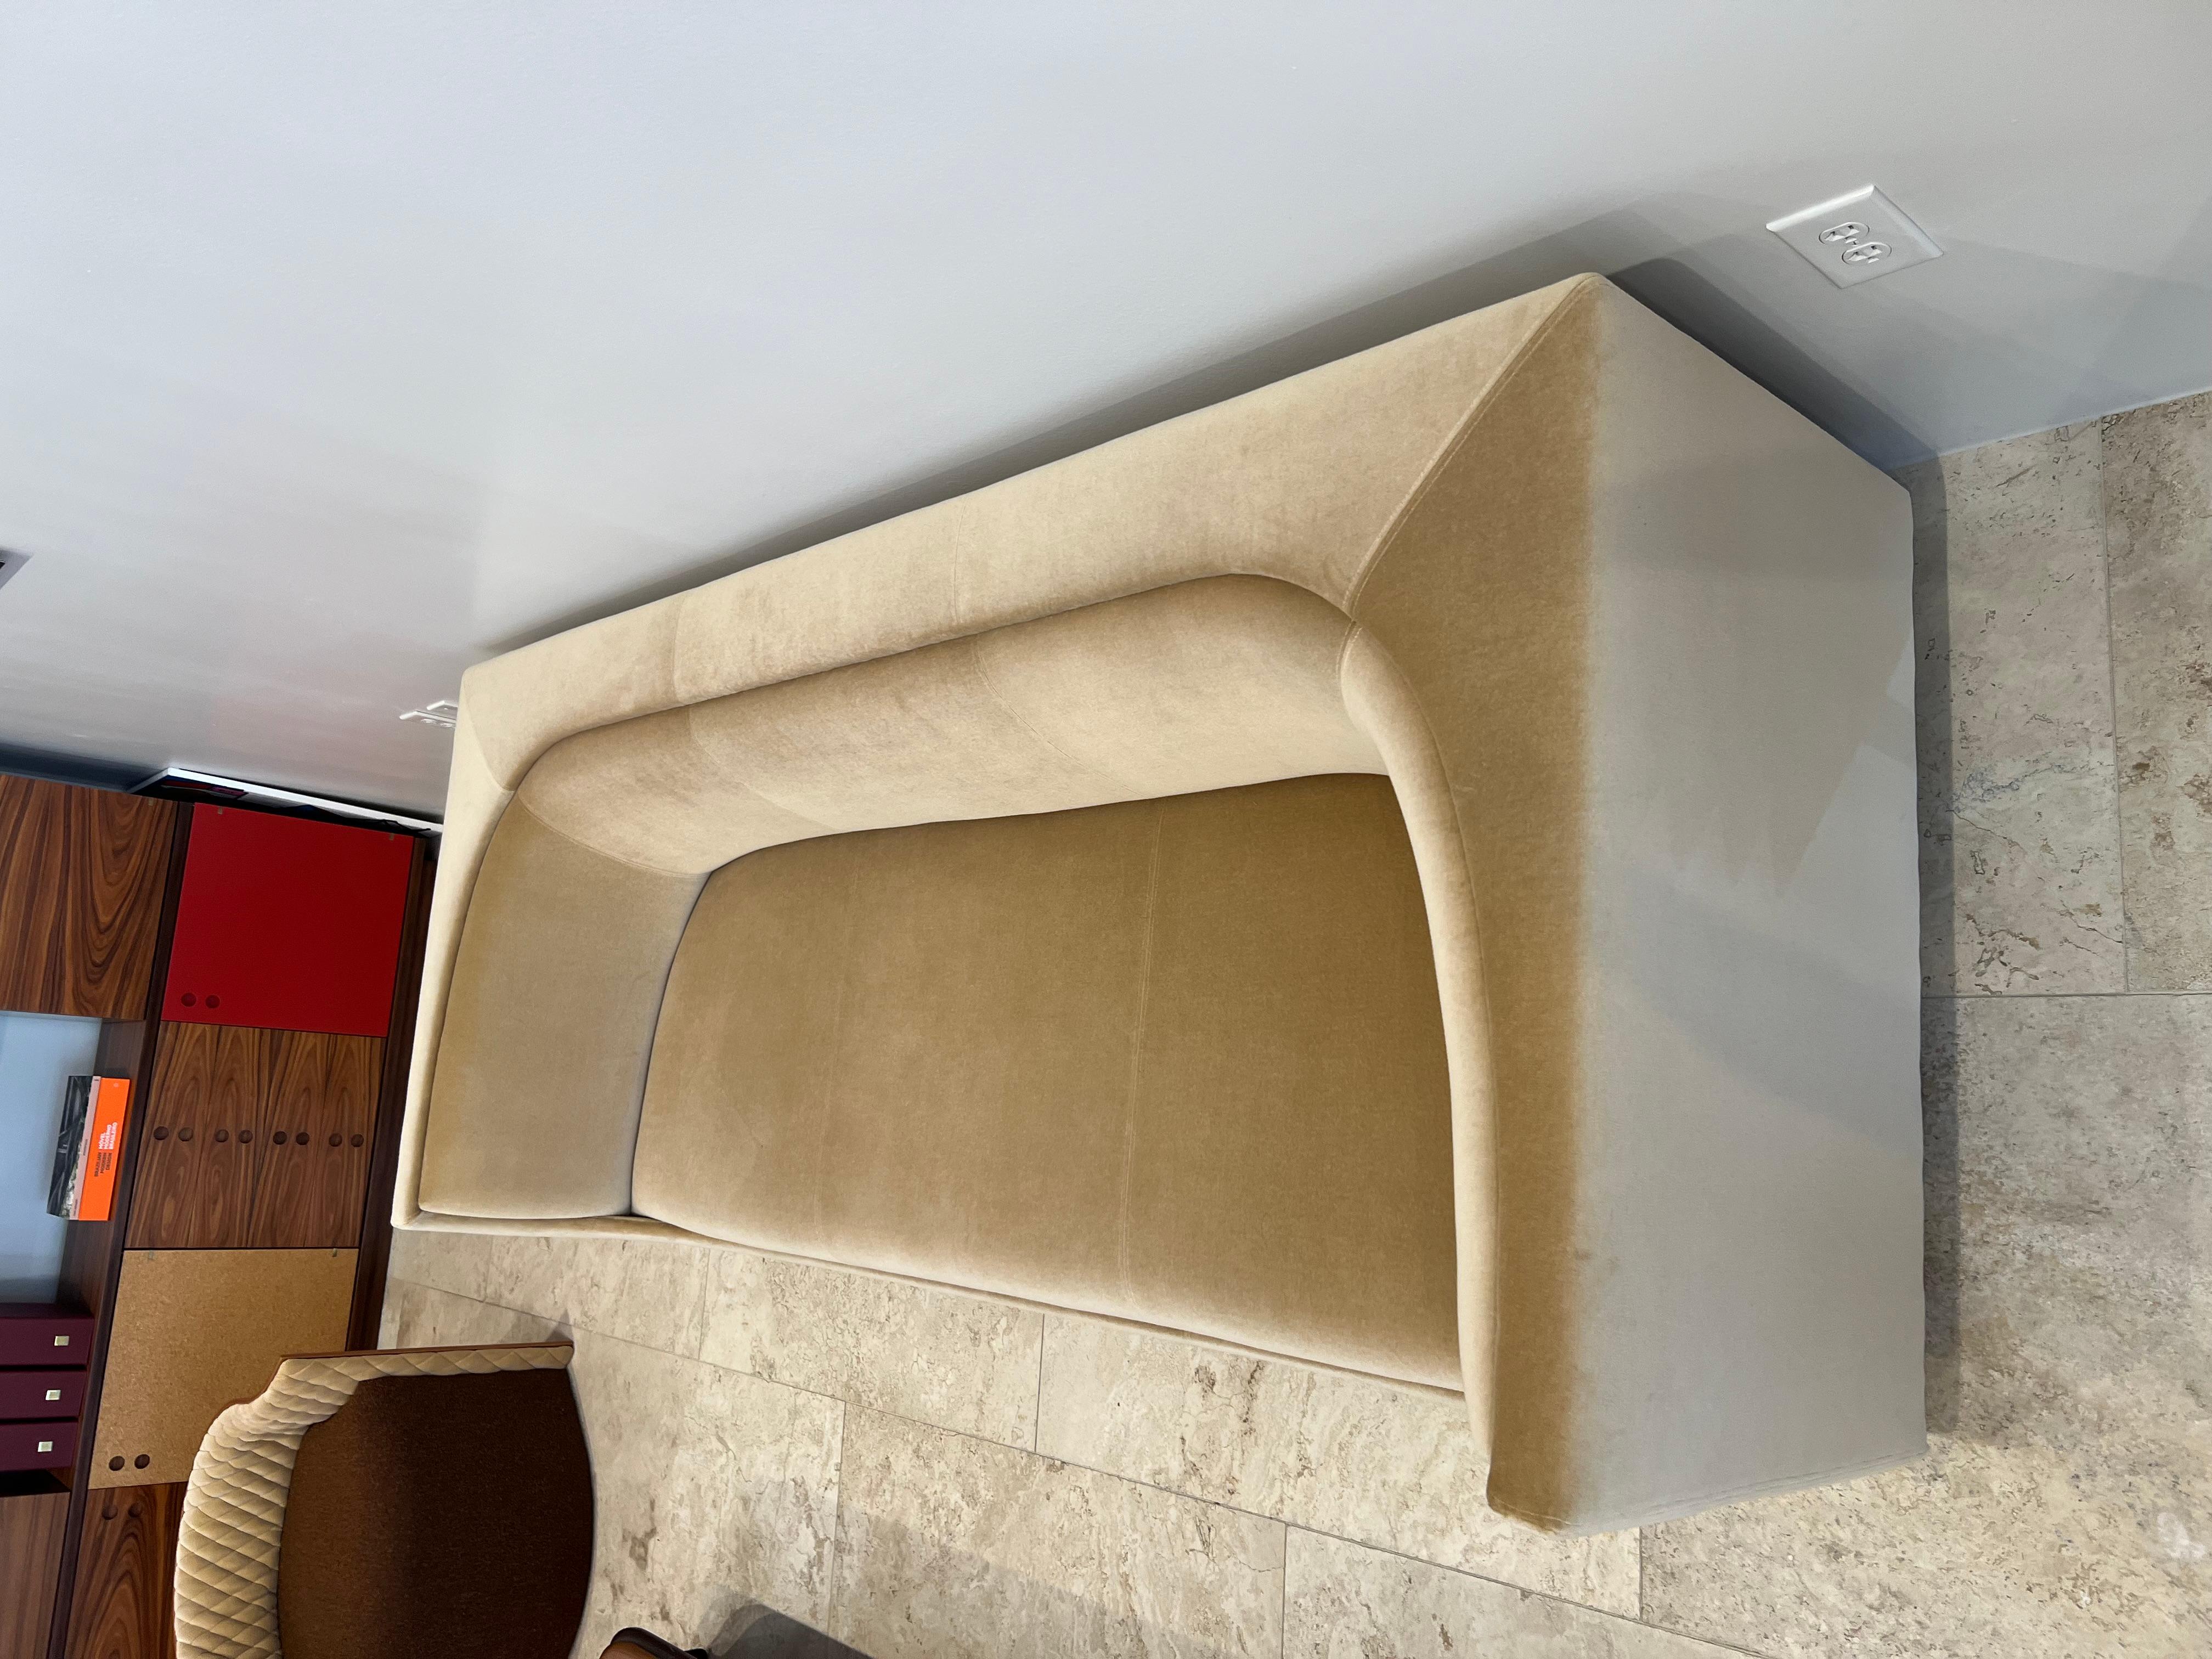 Cubo-Sofa
1960 / Neuauflage ab 2020
Die von Jorge Zalszupin in den späten 1970er Jahren entworfene Linie Cubo unterscheidet sich von seinen anderen Kollektionen. Diese leichten, aus Holz gefertigten Stücke sind gepolstert und bieten viel Komfort.